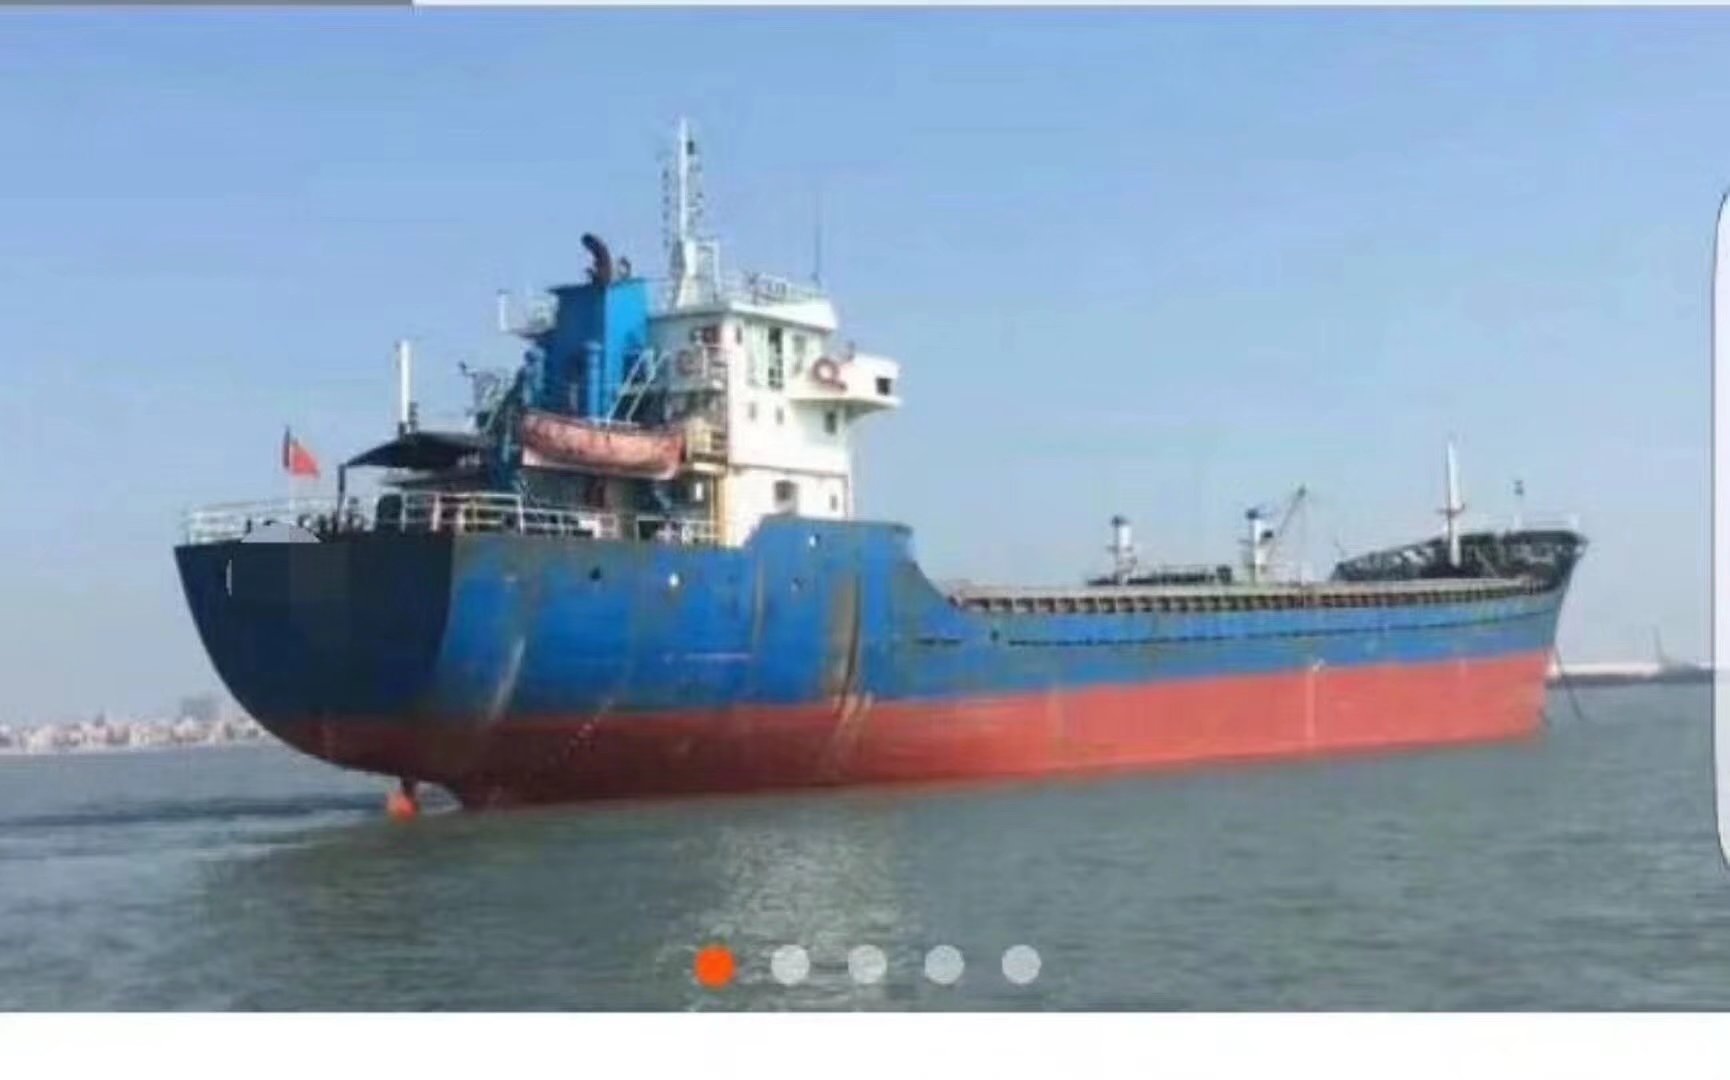 出售2650吨干货船